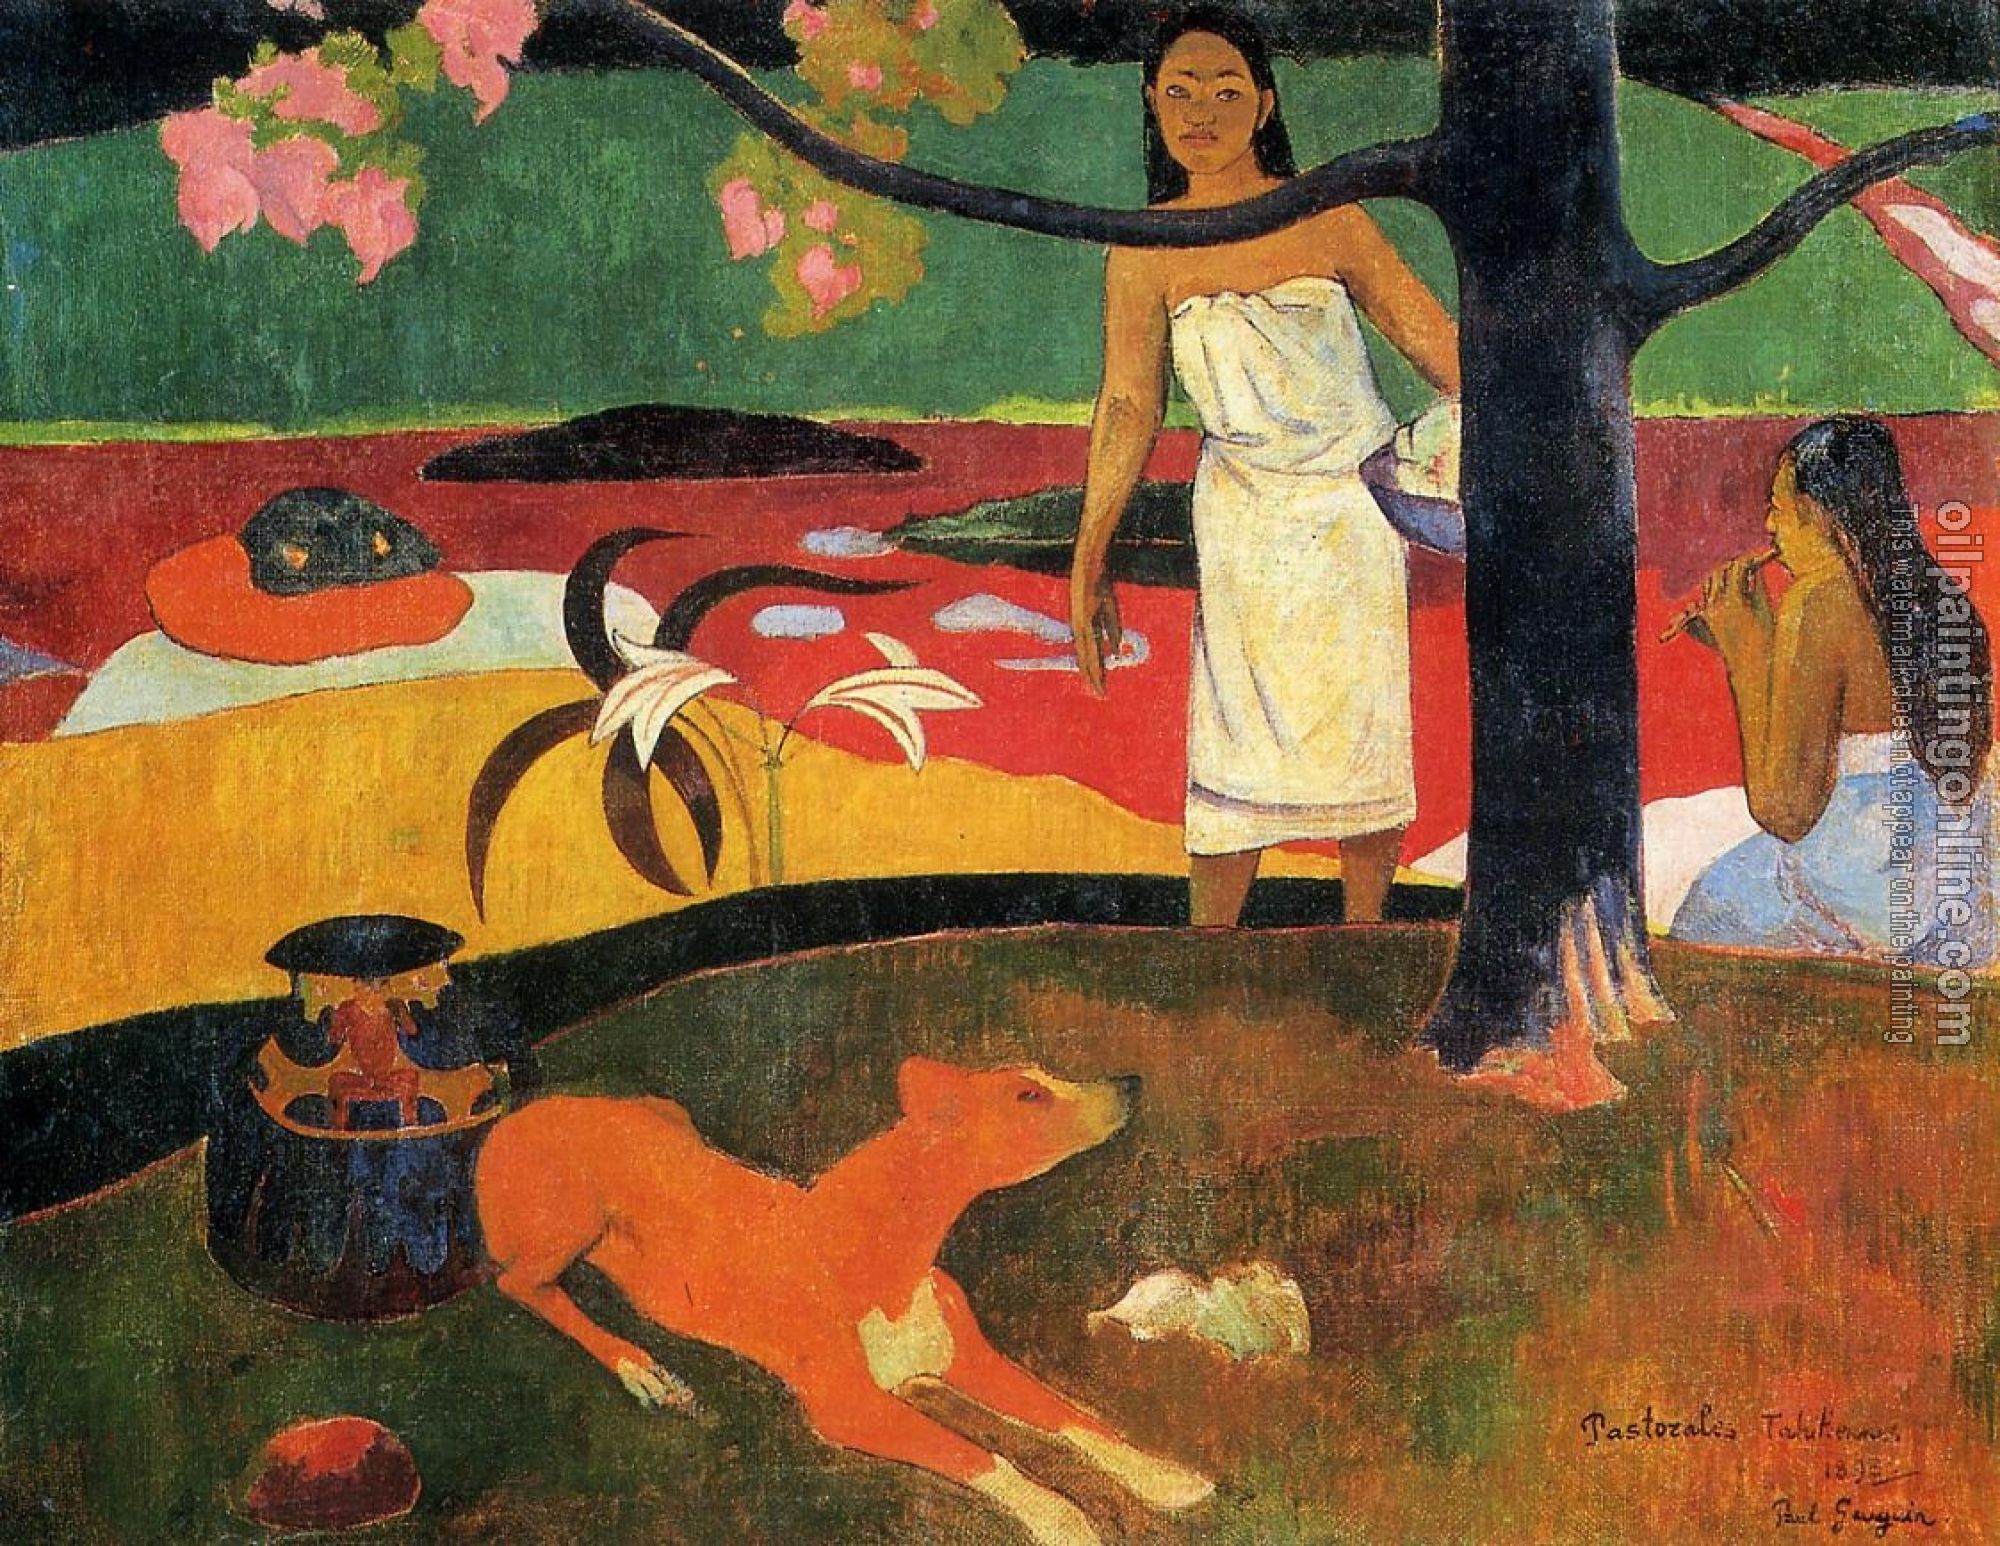 Gauguin, Paul - Tahitian Pastorals